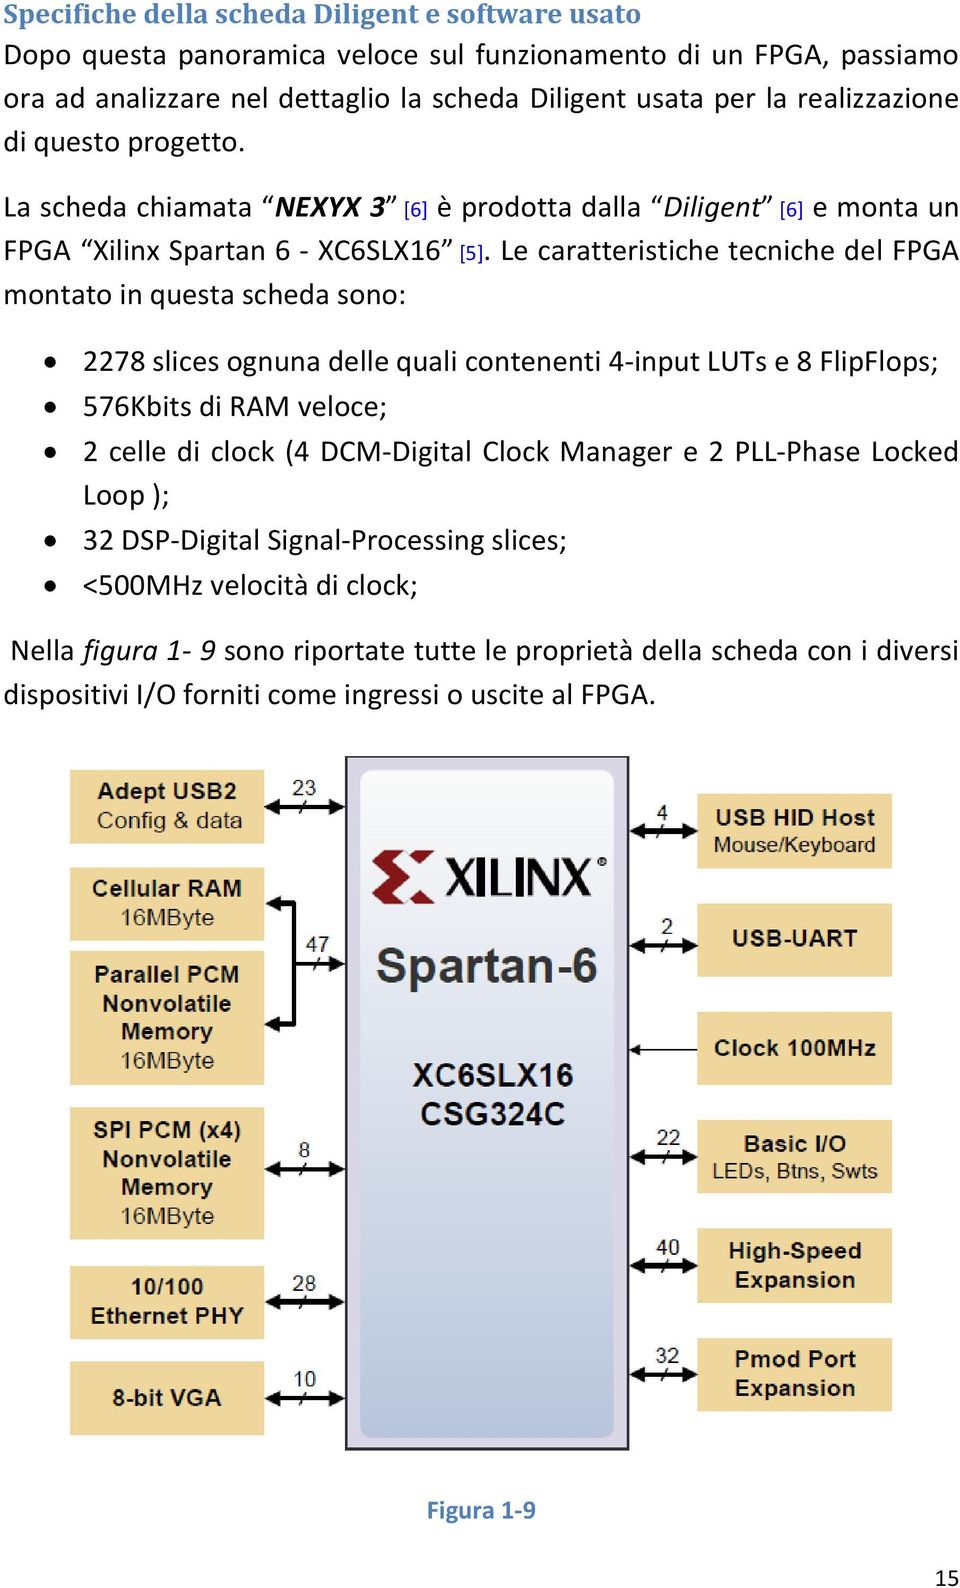 Le caratteristiche tecniche del FPGA montato in questa scheda sono: 2278 slices ognuna delle quali contenenti 4-input LUTs e 8 FlipFlops; 576Kbits di RAM veloce; 2 celle di clock (4 DCM-Digital